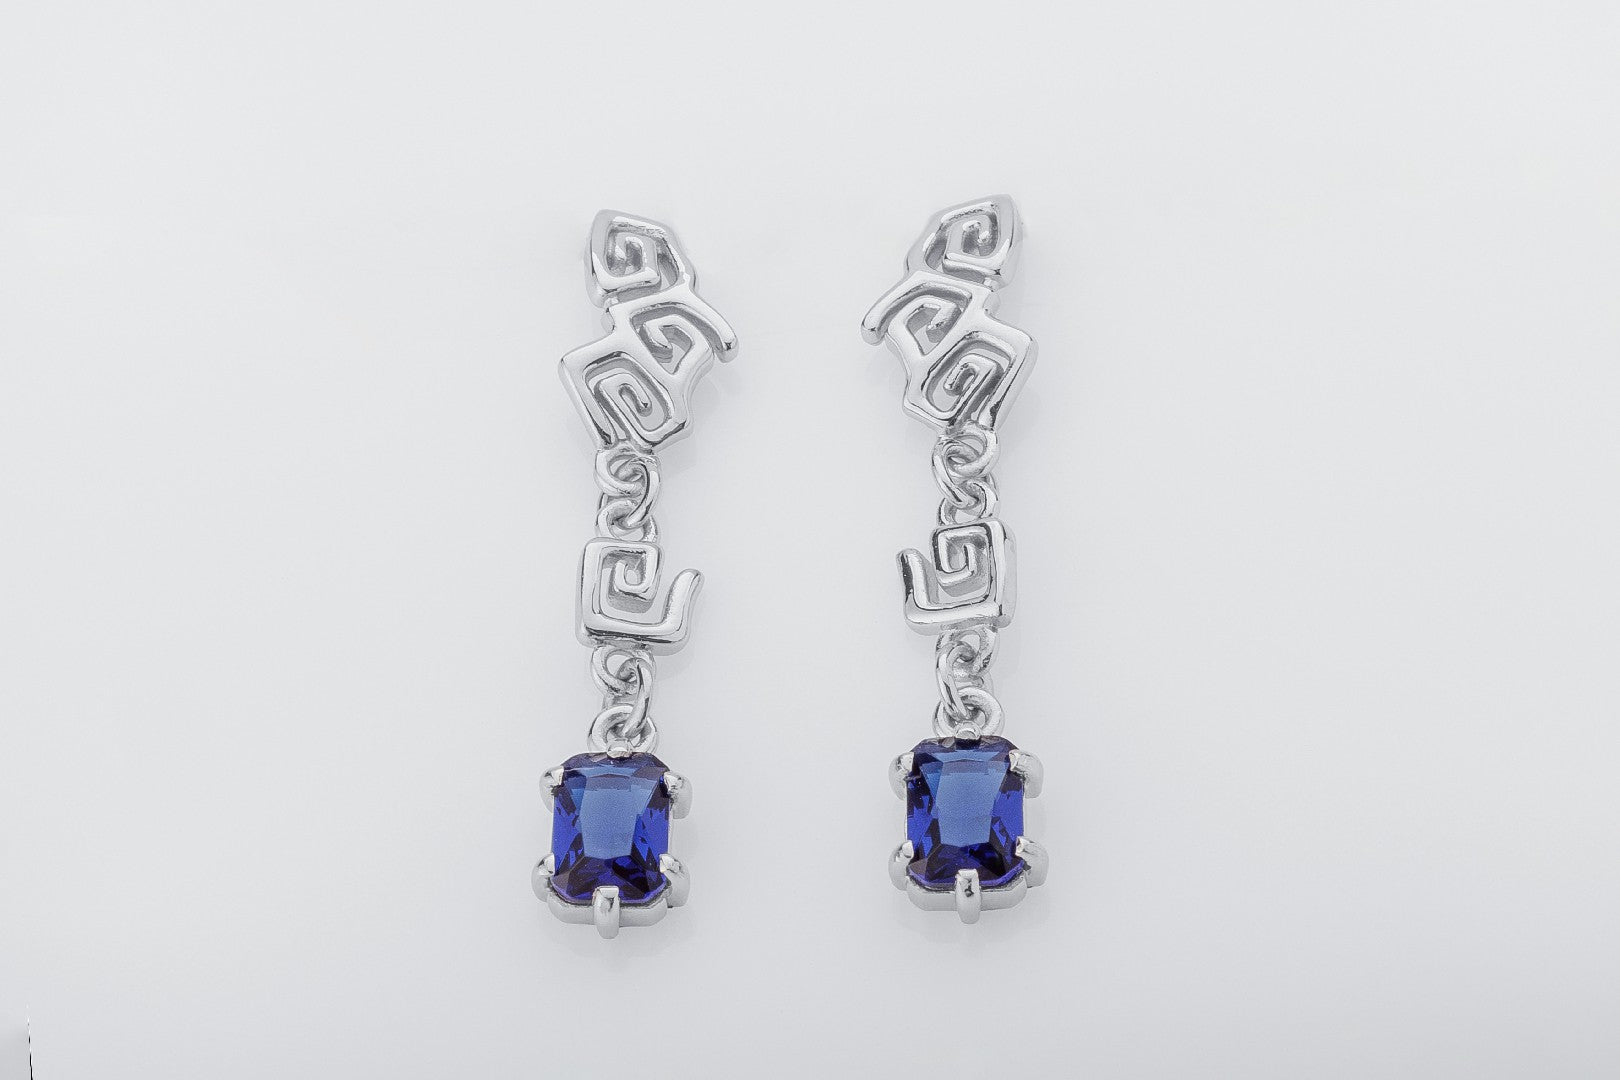 Sea Foam Earrings with Blue Gems, 925 silver